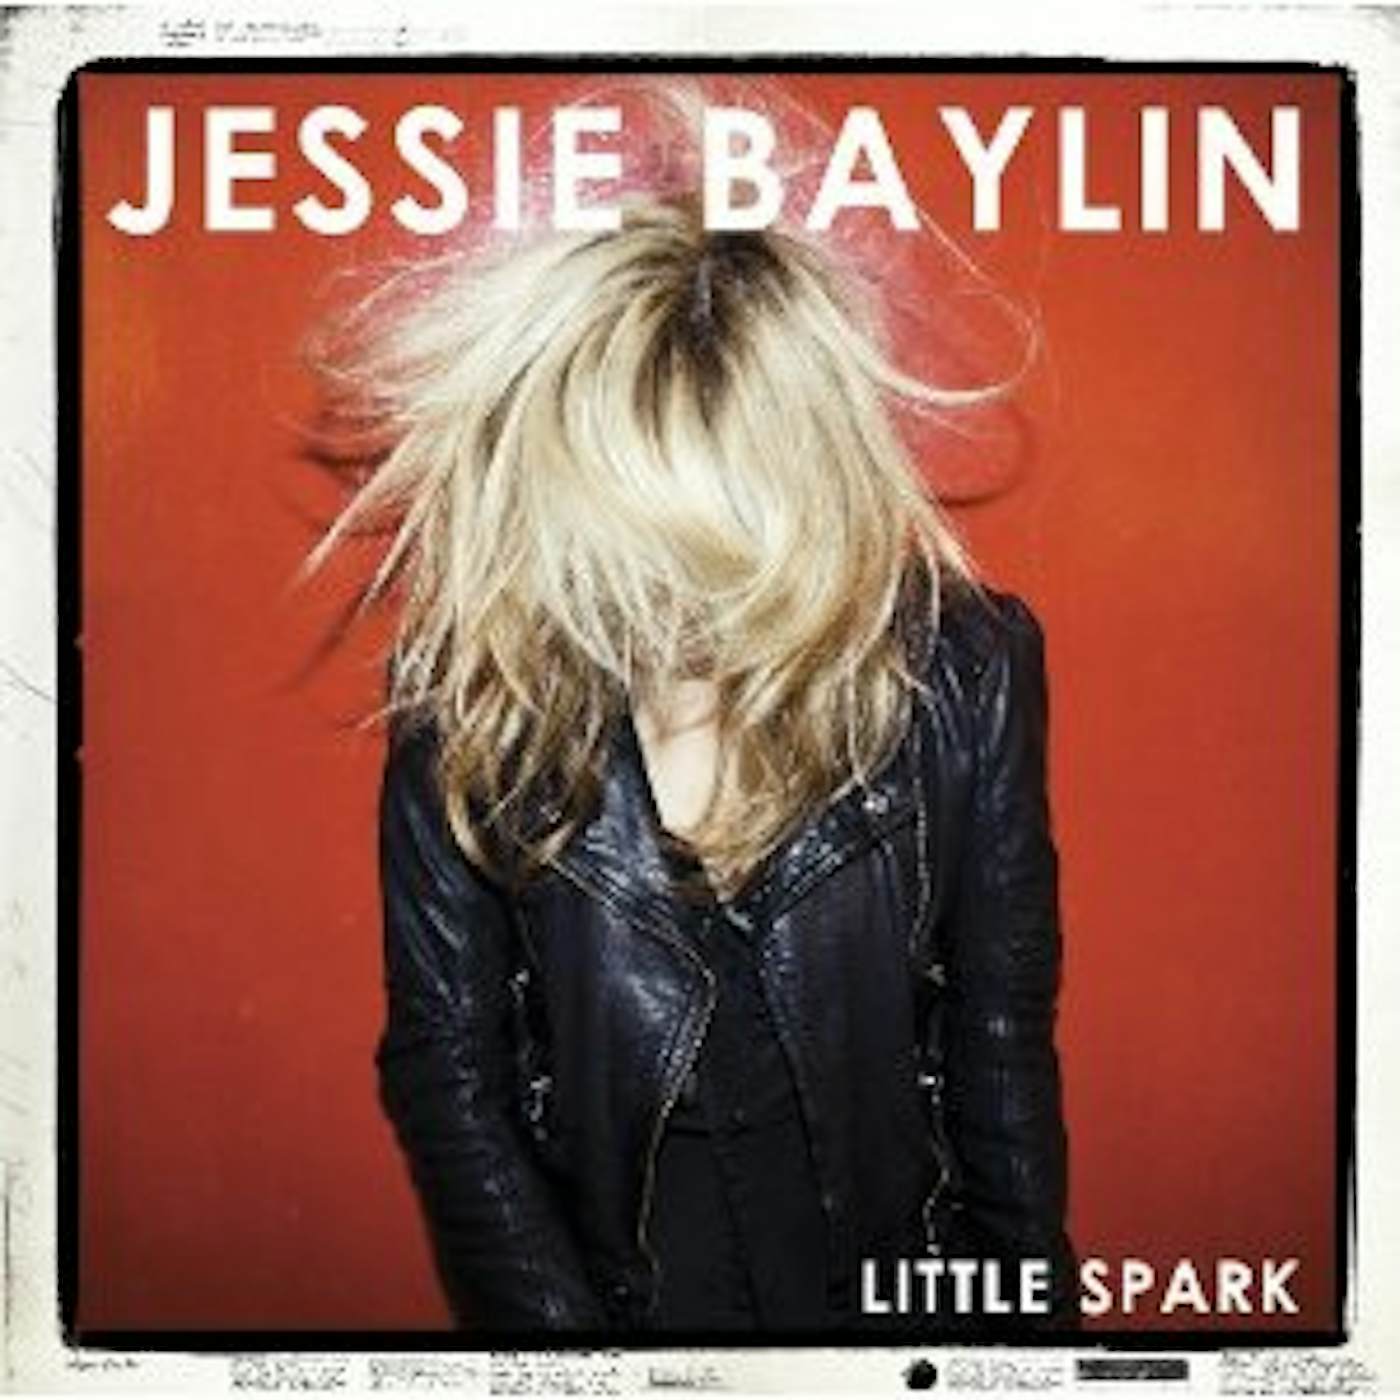 Jessie Baylin LITTLE SPARK CD